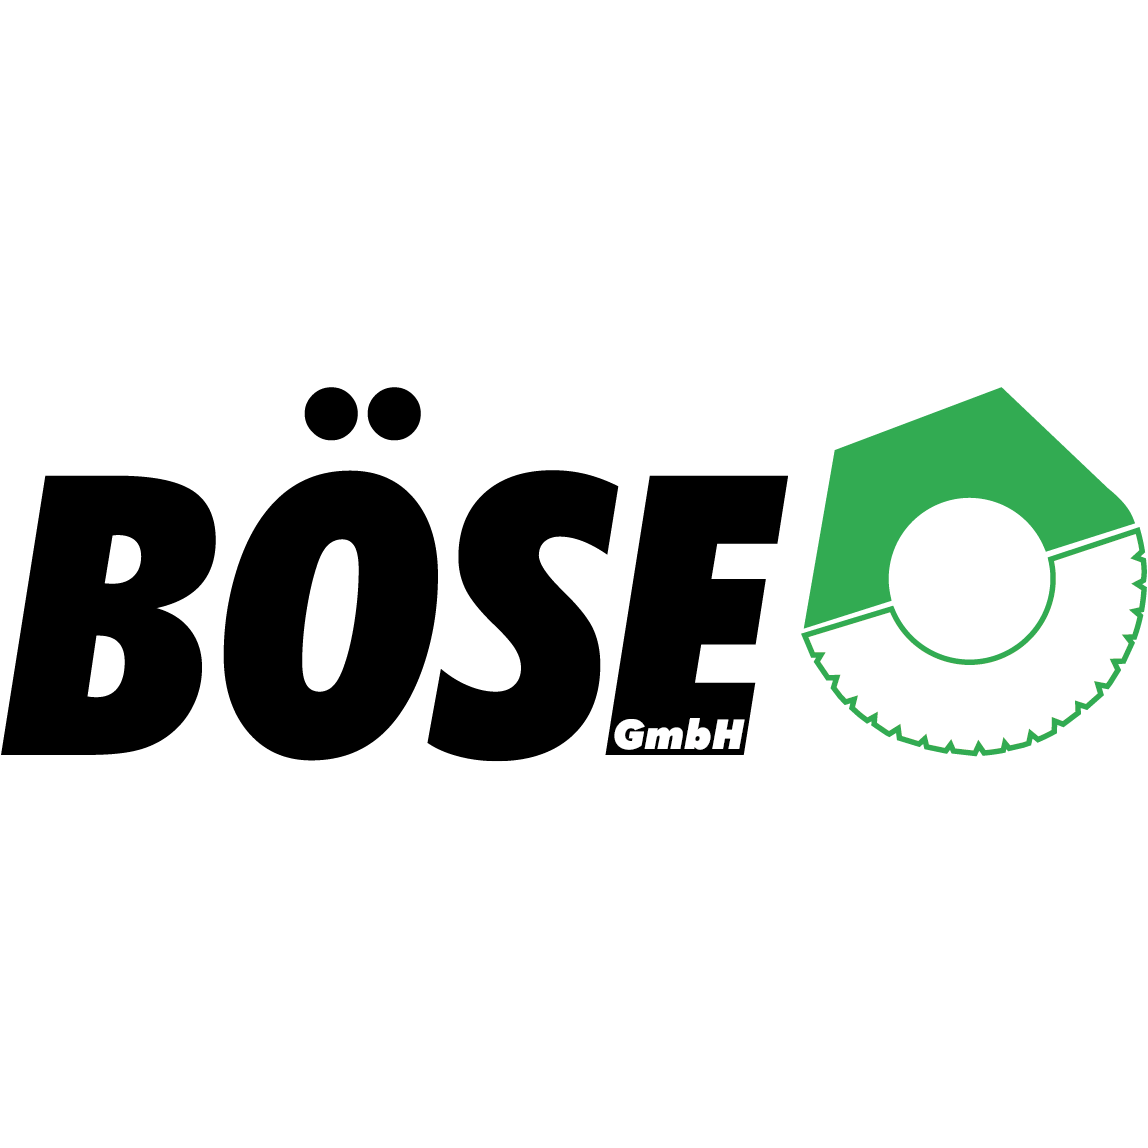 Böse GmbH in Wietzen - Logo